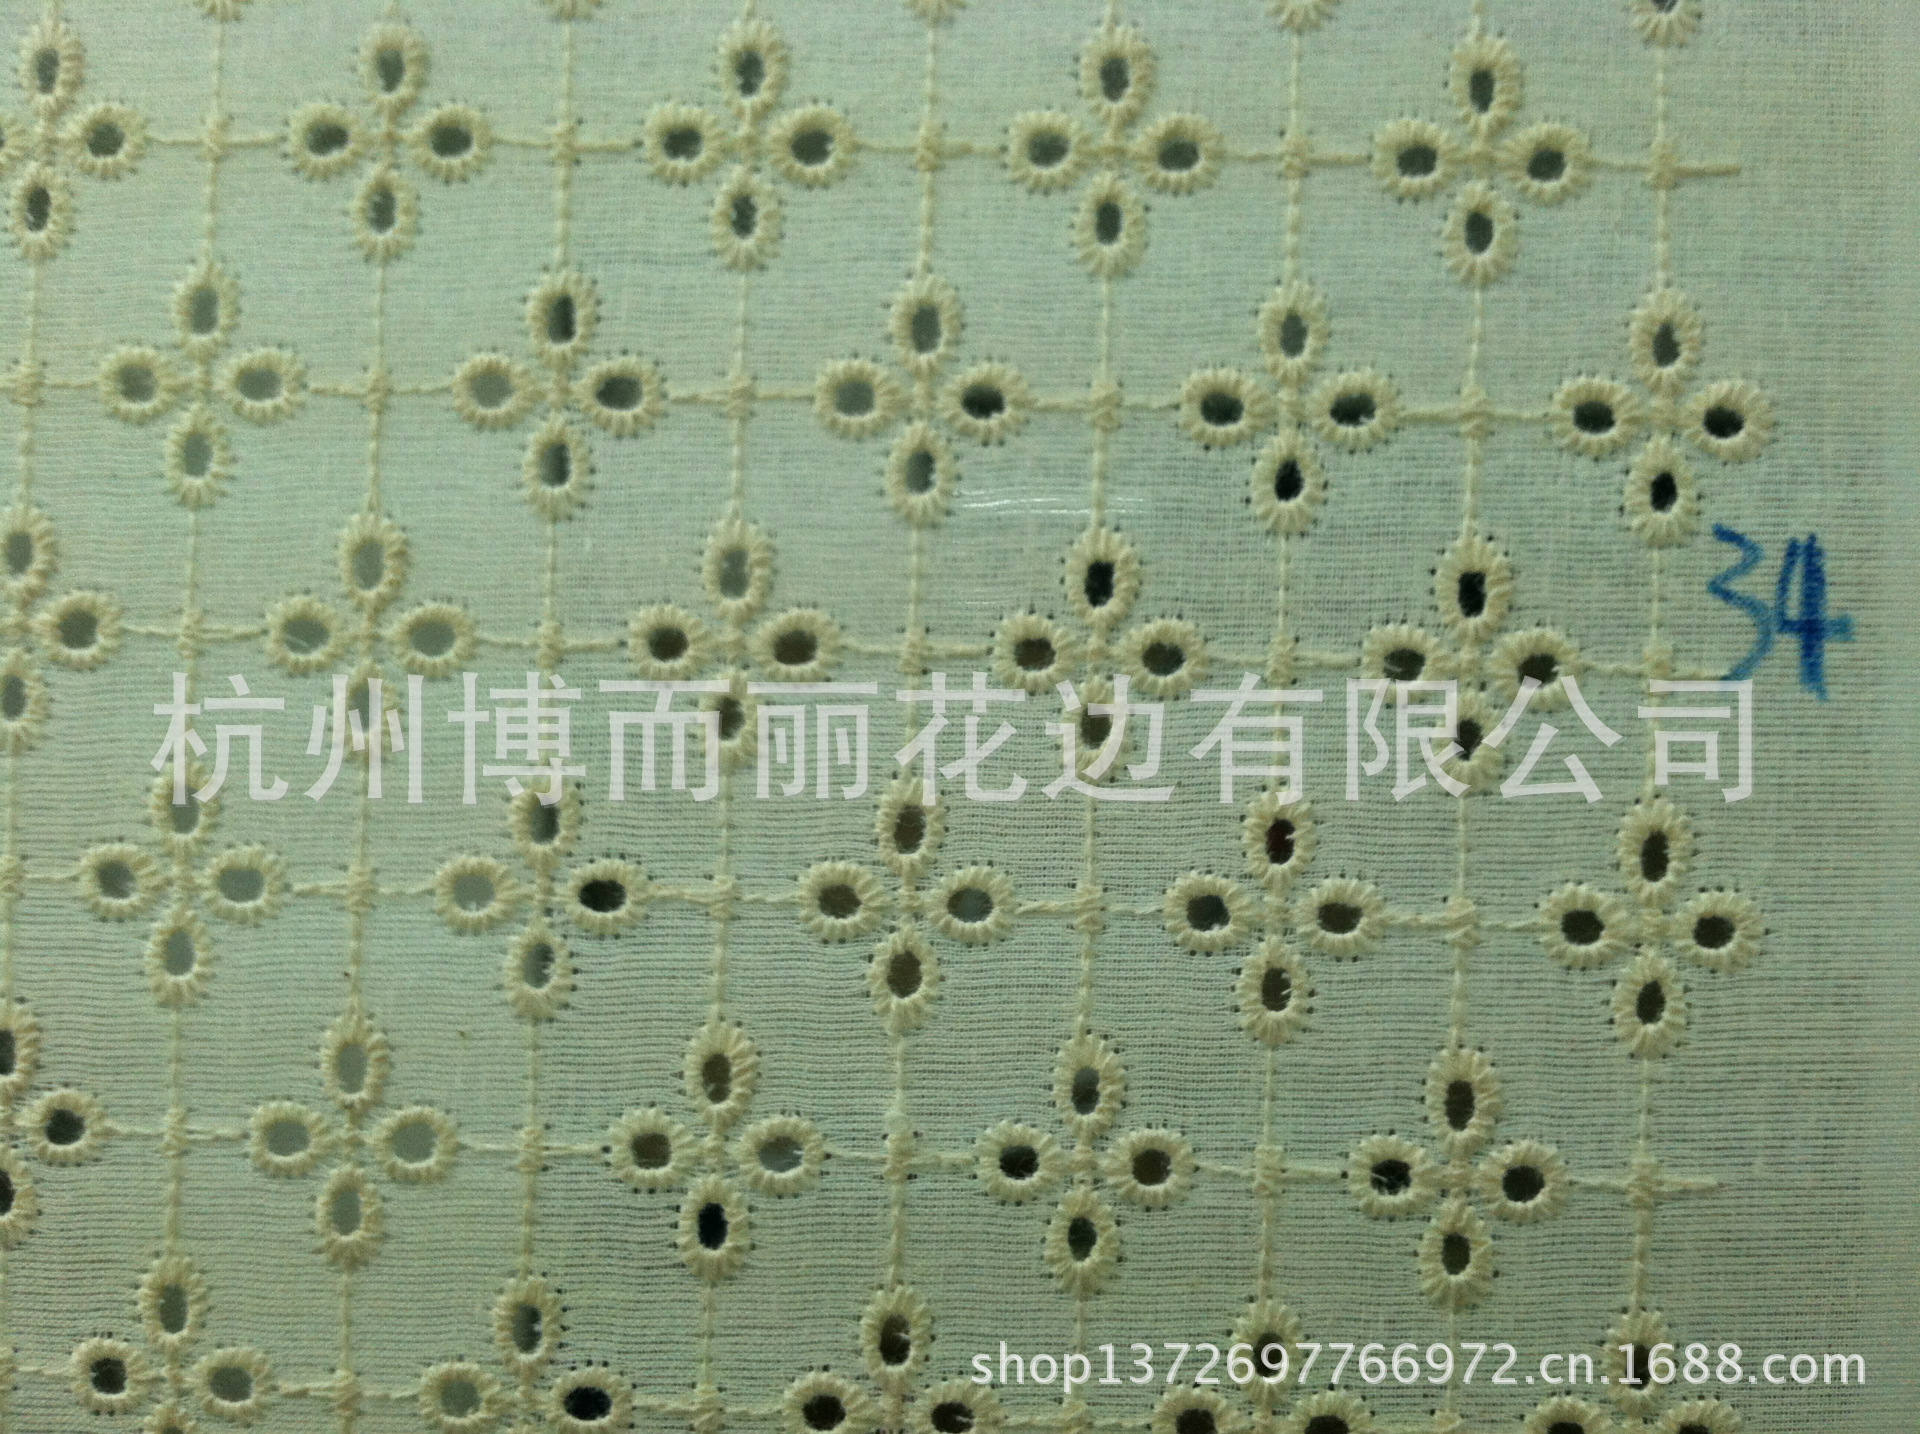 【商家力推】供应优质新款绣花布  棉布绣花  高品质棉布打孔